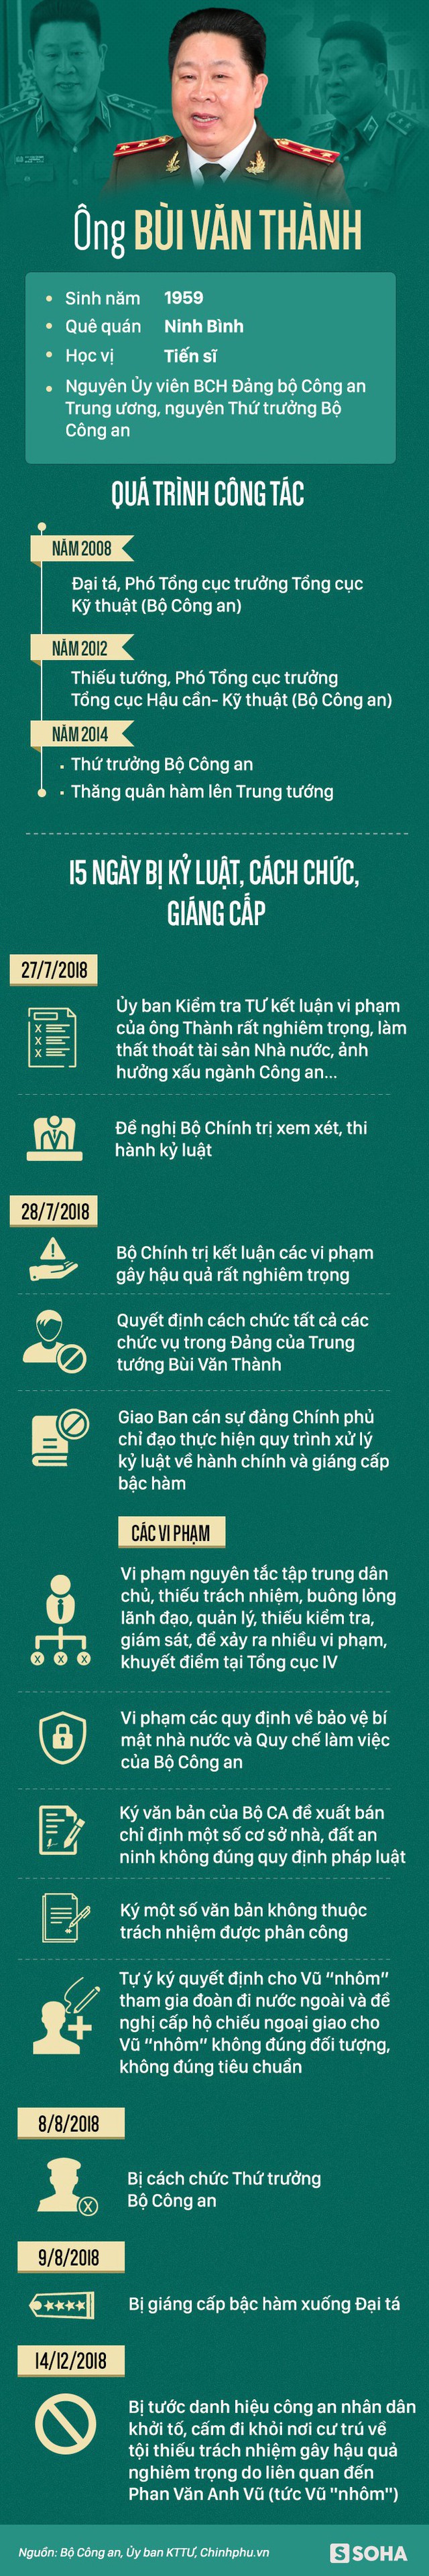  Sự nghiệp của 2 cựu Thứ trưởng Bộ Công an Trần Việt Tân và Bùi Văn Thành vừa bị khởi tố - Ảnh 2.